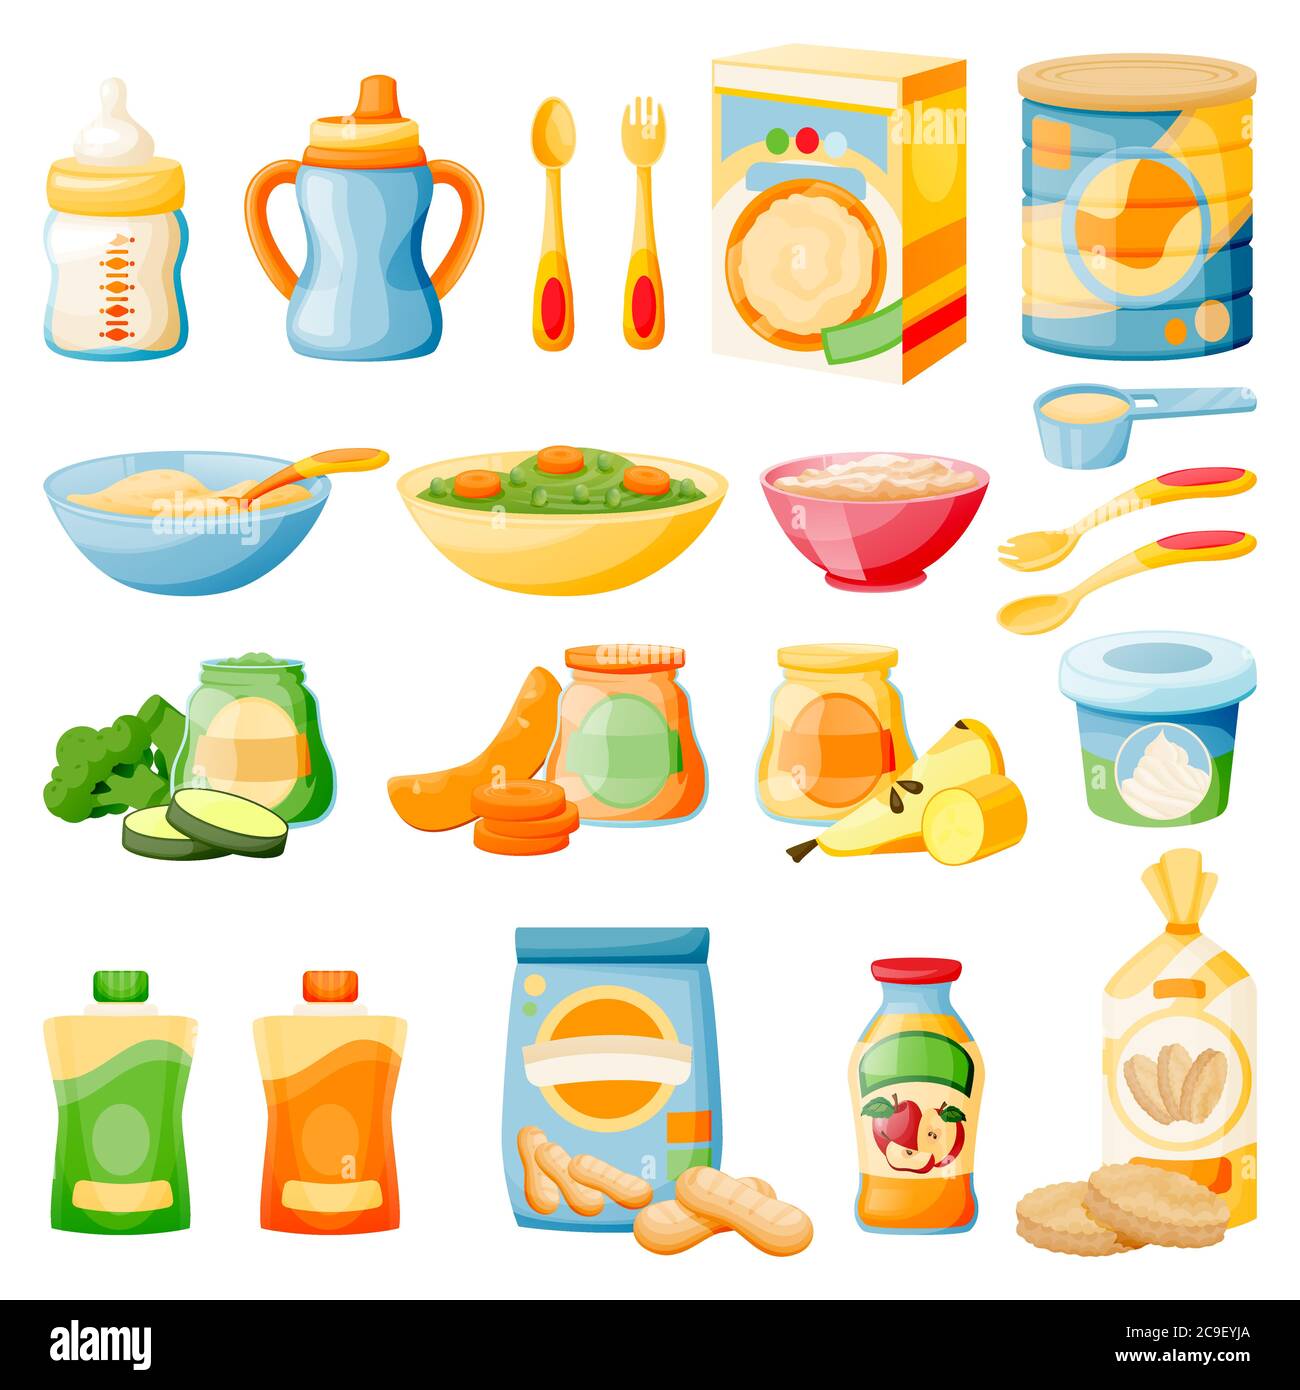 Aliments sains pour bébés en pots, biberons et boîtes. Ensemble d'icônes de repas pour enfants, isolé sur fond blanc. Illustration de dessin animé à plat vectoriel de fruits et de légumes Illustration de Vecteur